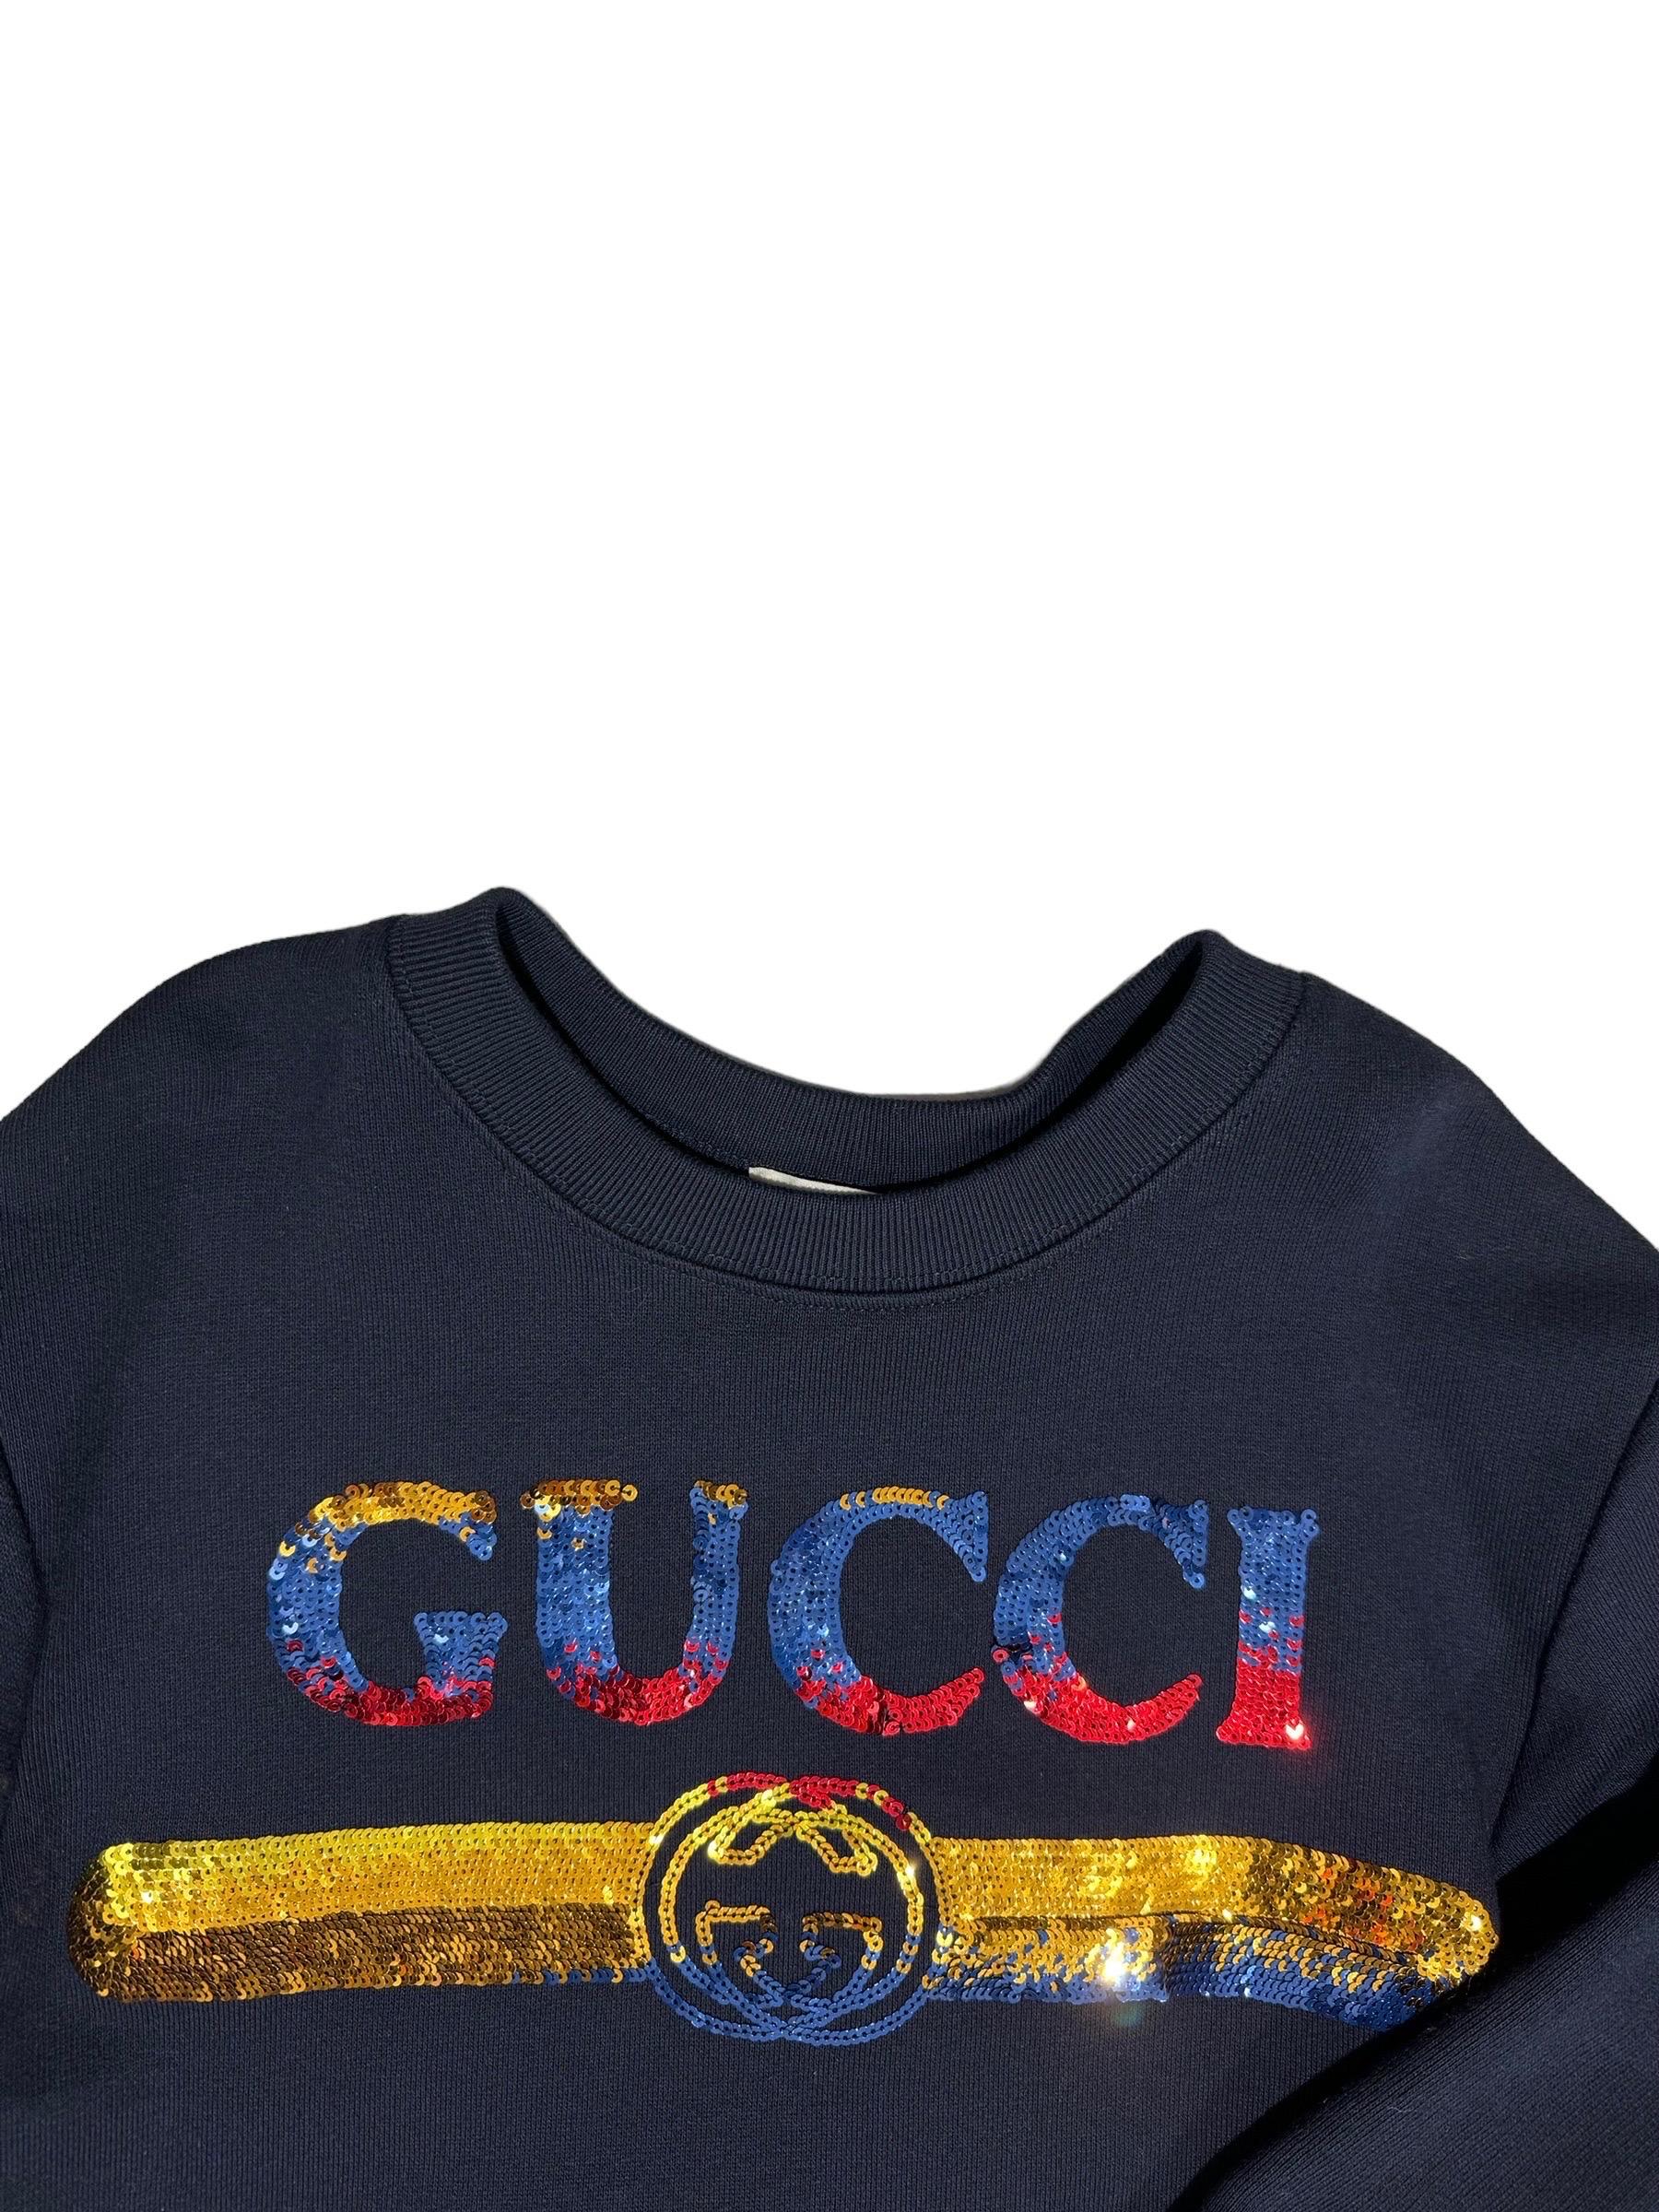 Felpa baby firmata Gucci, realizzata in cotone garzato di colore blu, sulla parte frontale presenta la scritta del brand in paillettes di colore giallo, blu e rosso. All’estremità dei polsi è realizzata in costine.

Taglia 4 anni. L’articolo si